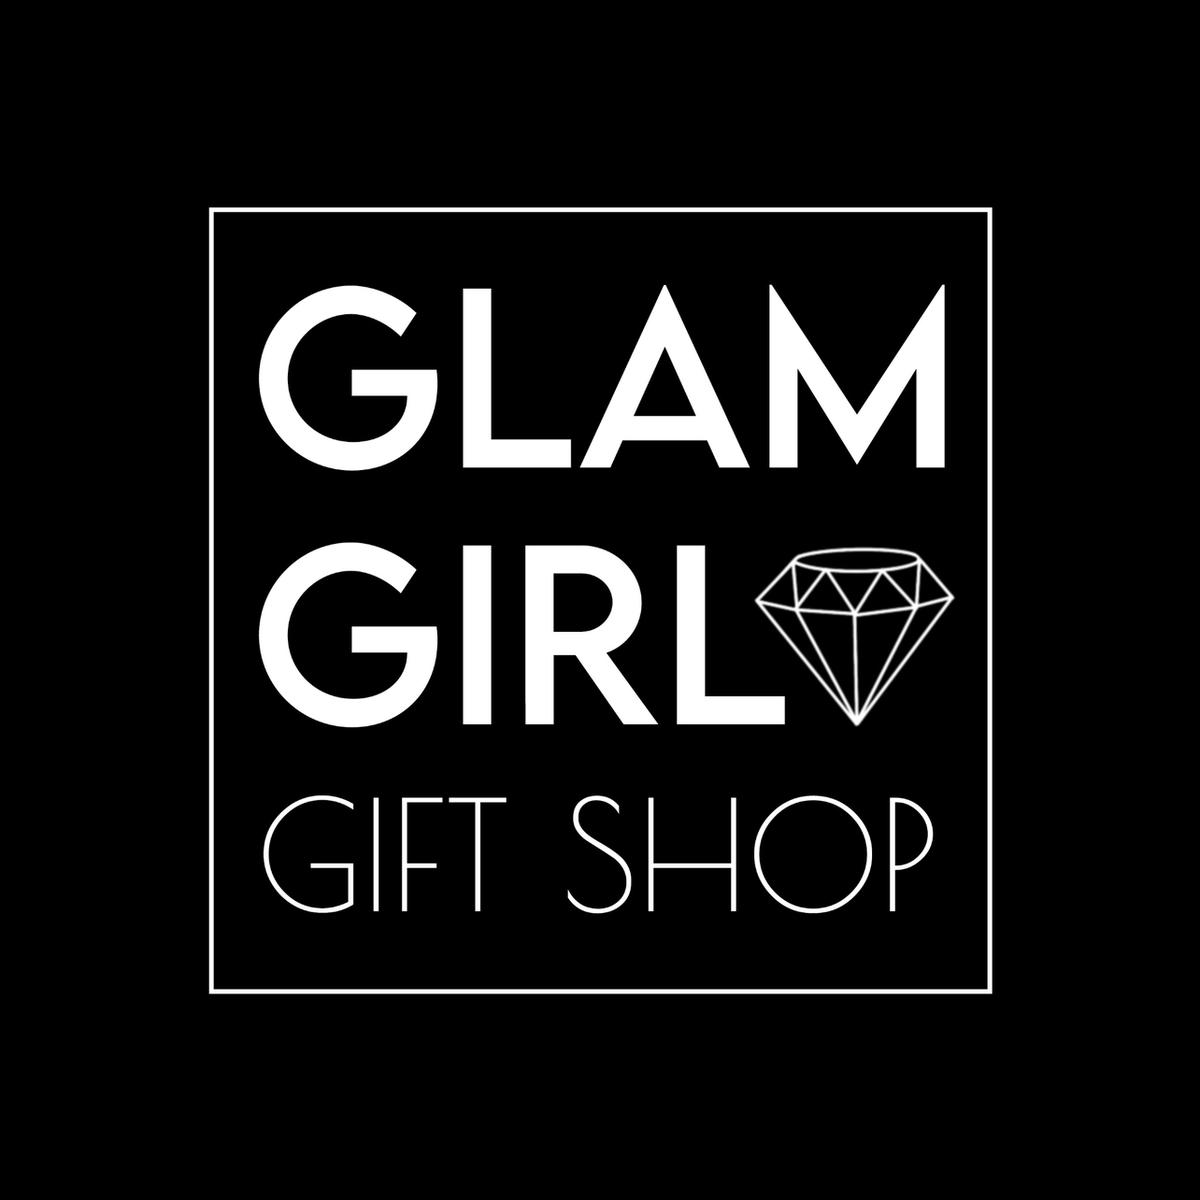 GlamGirlShop's images